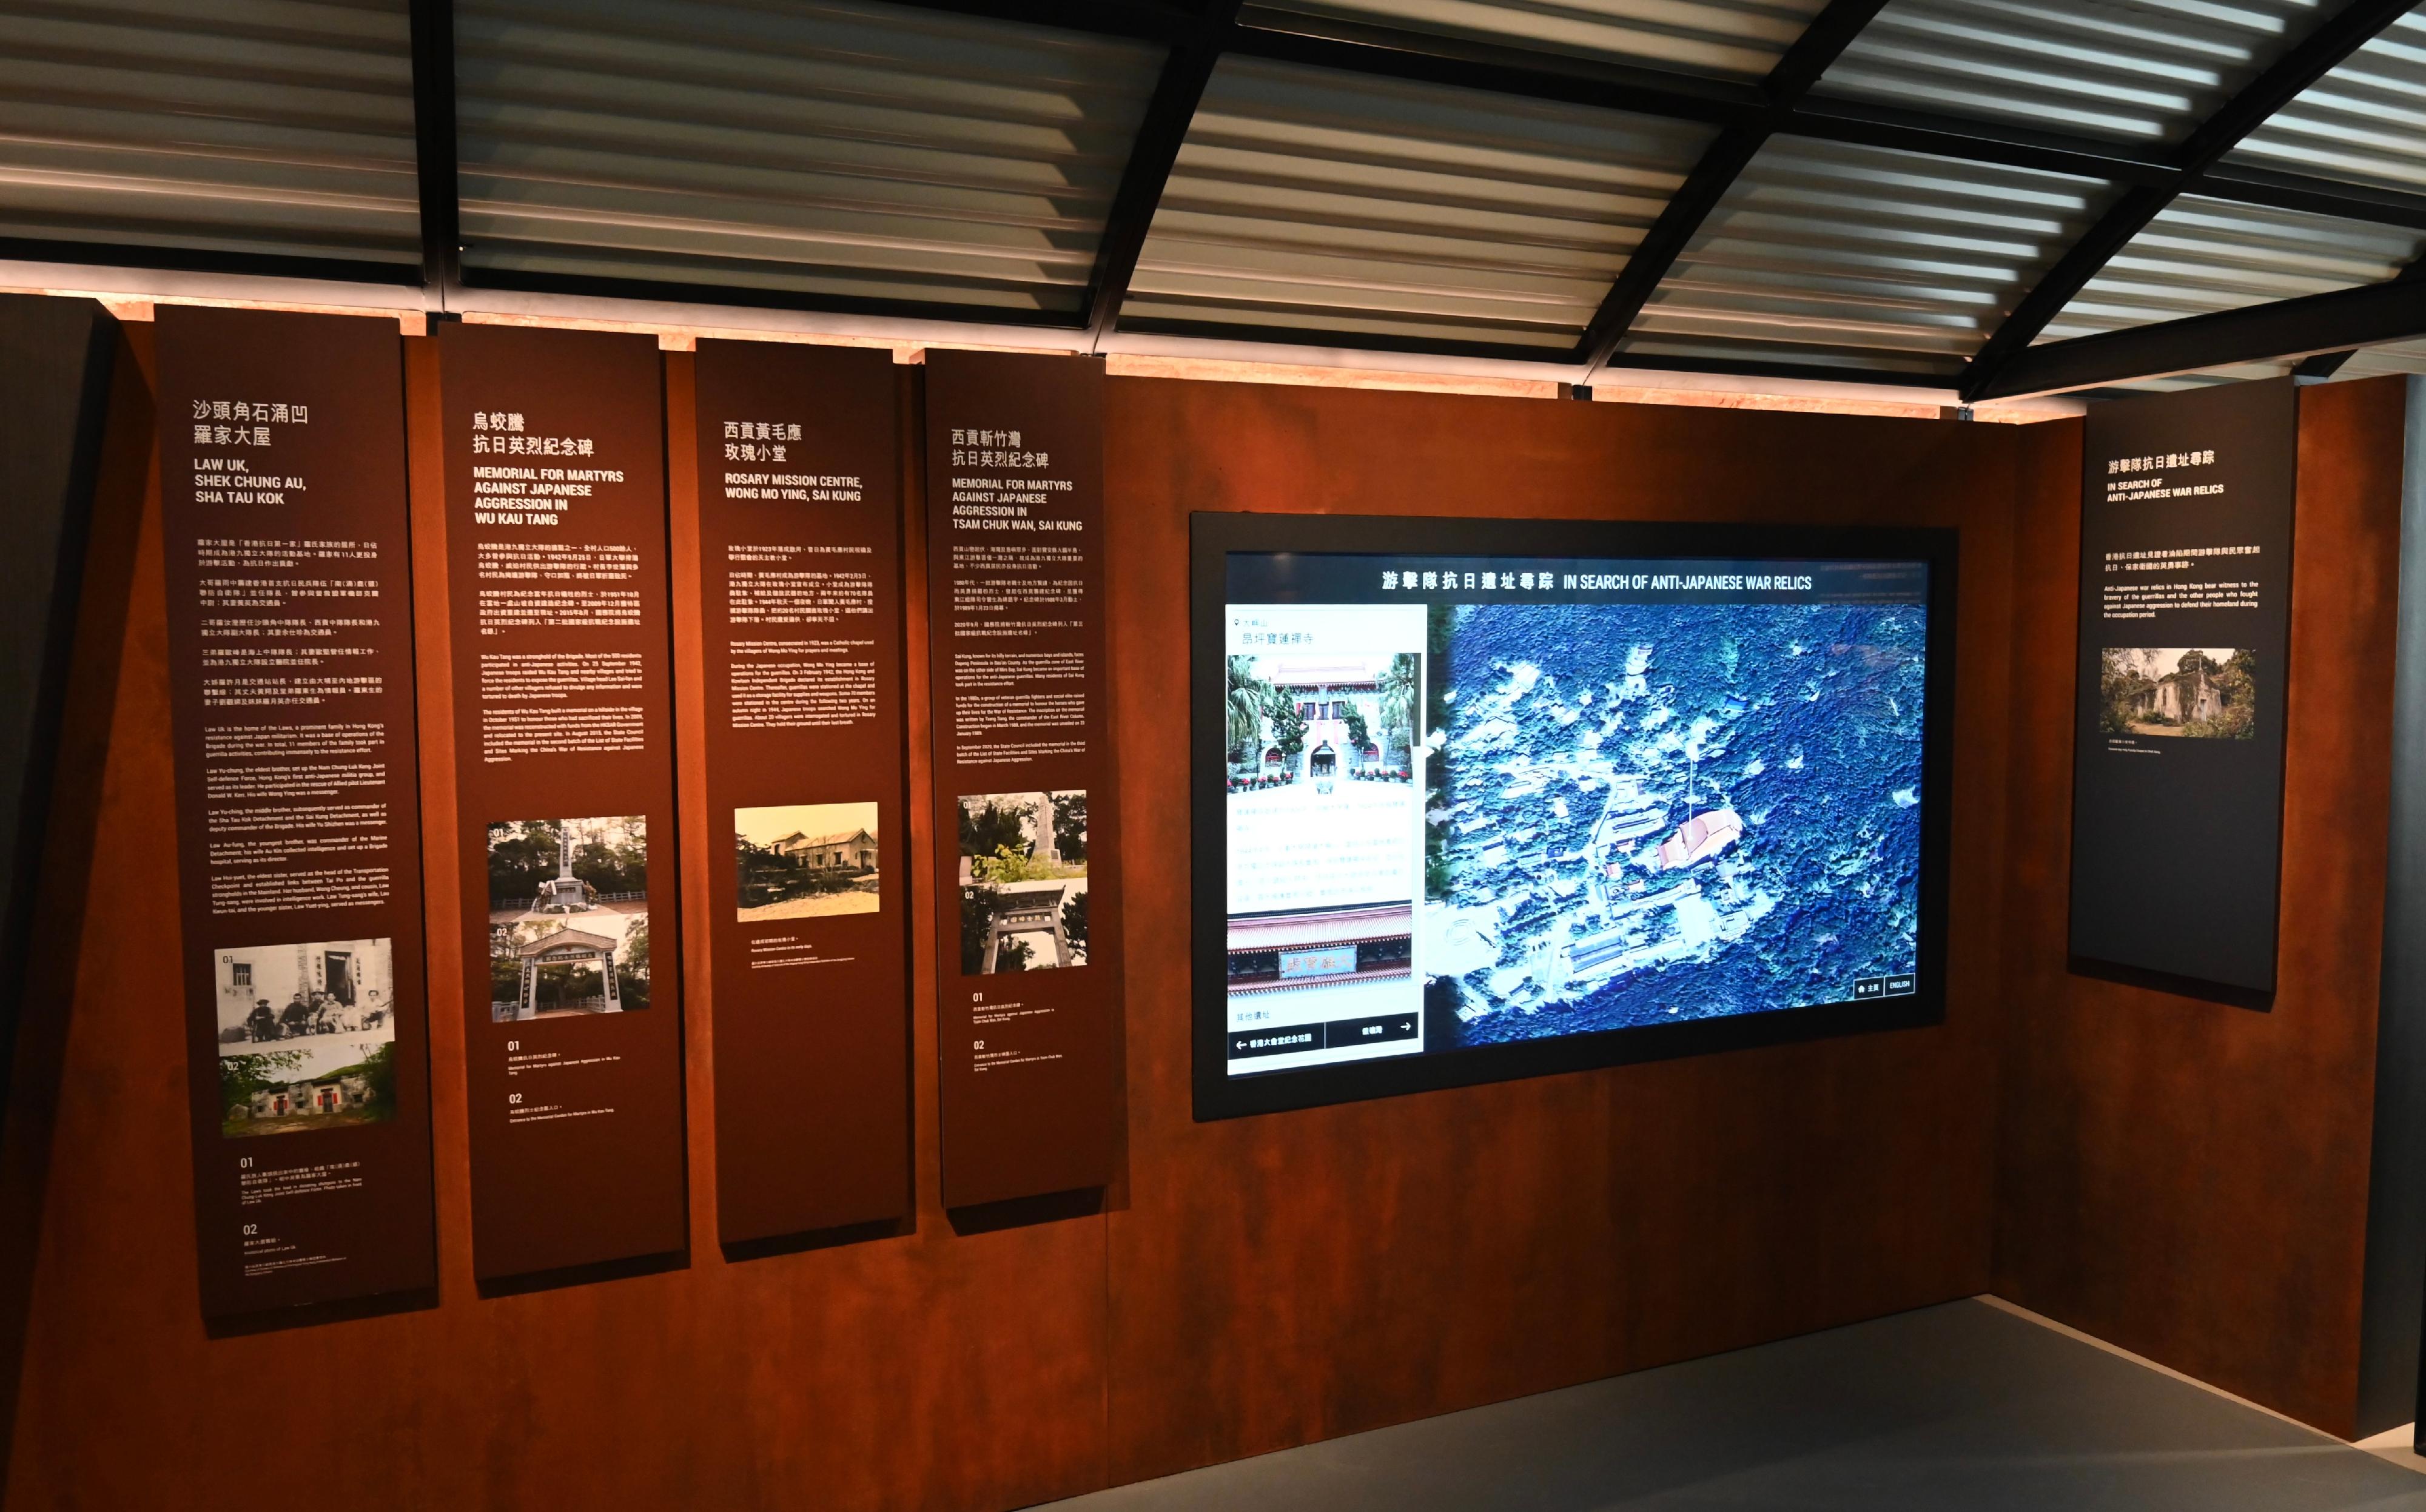 香港海防博物館於明日（十一月二十四日）起重新開放予市民參觀，並為觀眾帶來全新常設展覽「香港海防故事」。圖示「聲影說抗戰」展覽廳內的「游擊隊抗日遺址尋踪」互動展品。